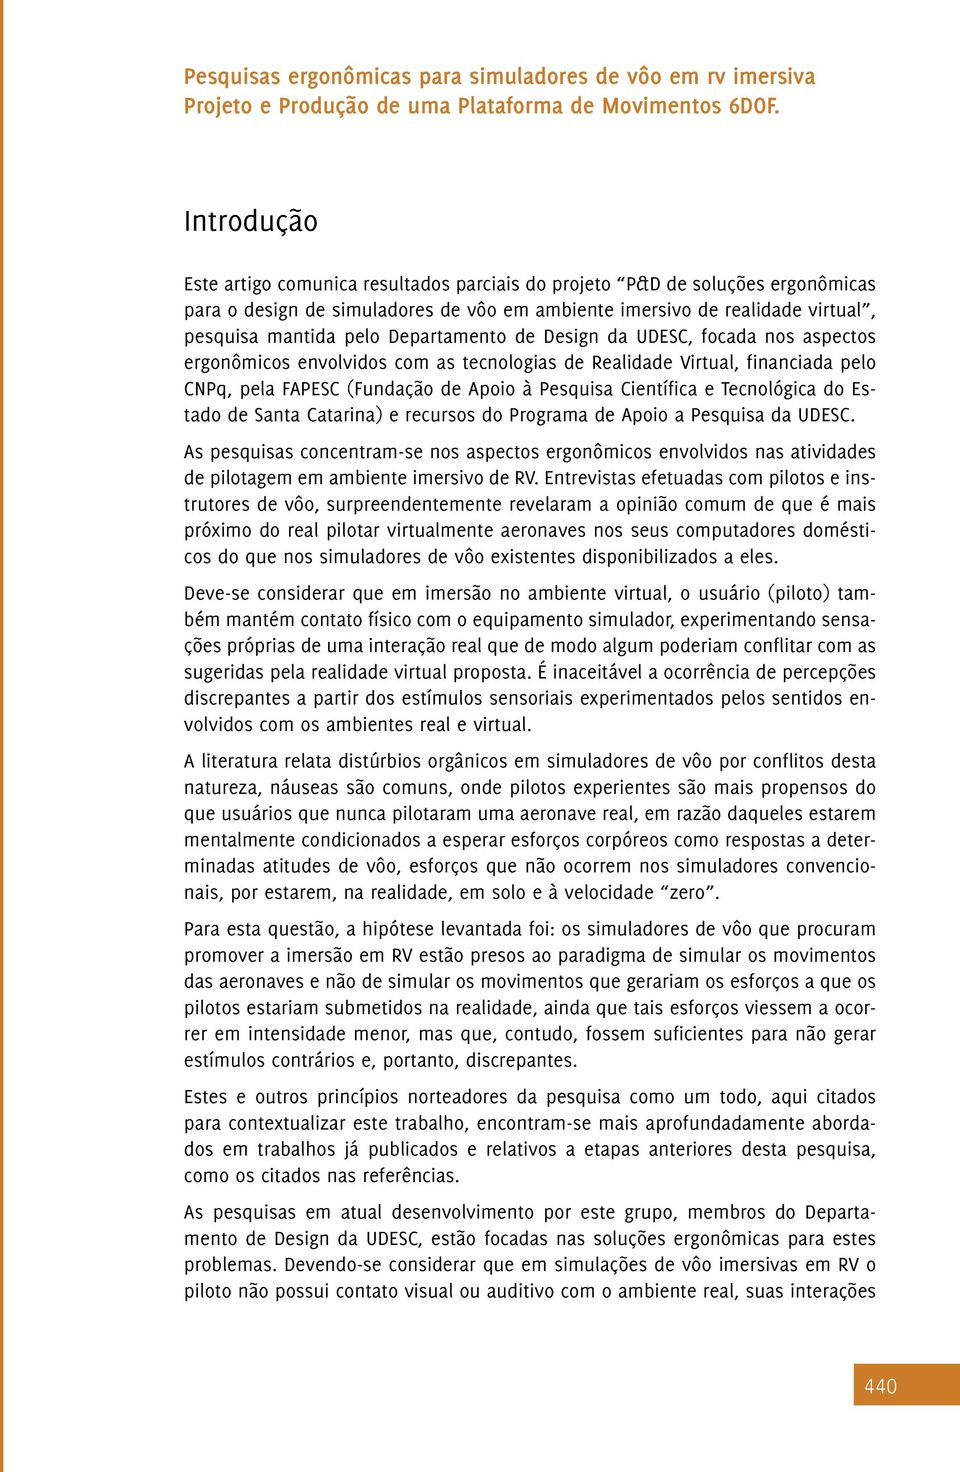 Tecnológica do Estado de Santa Catarina) e recursos do Programa de Apoio a Pesquisa da UDESC.